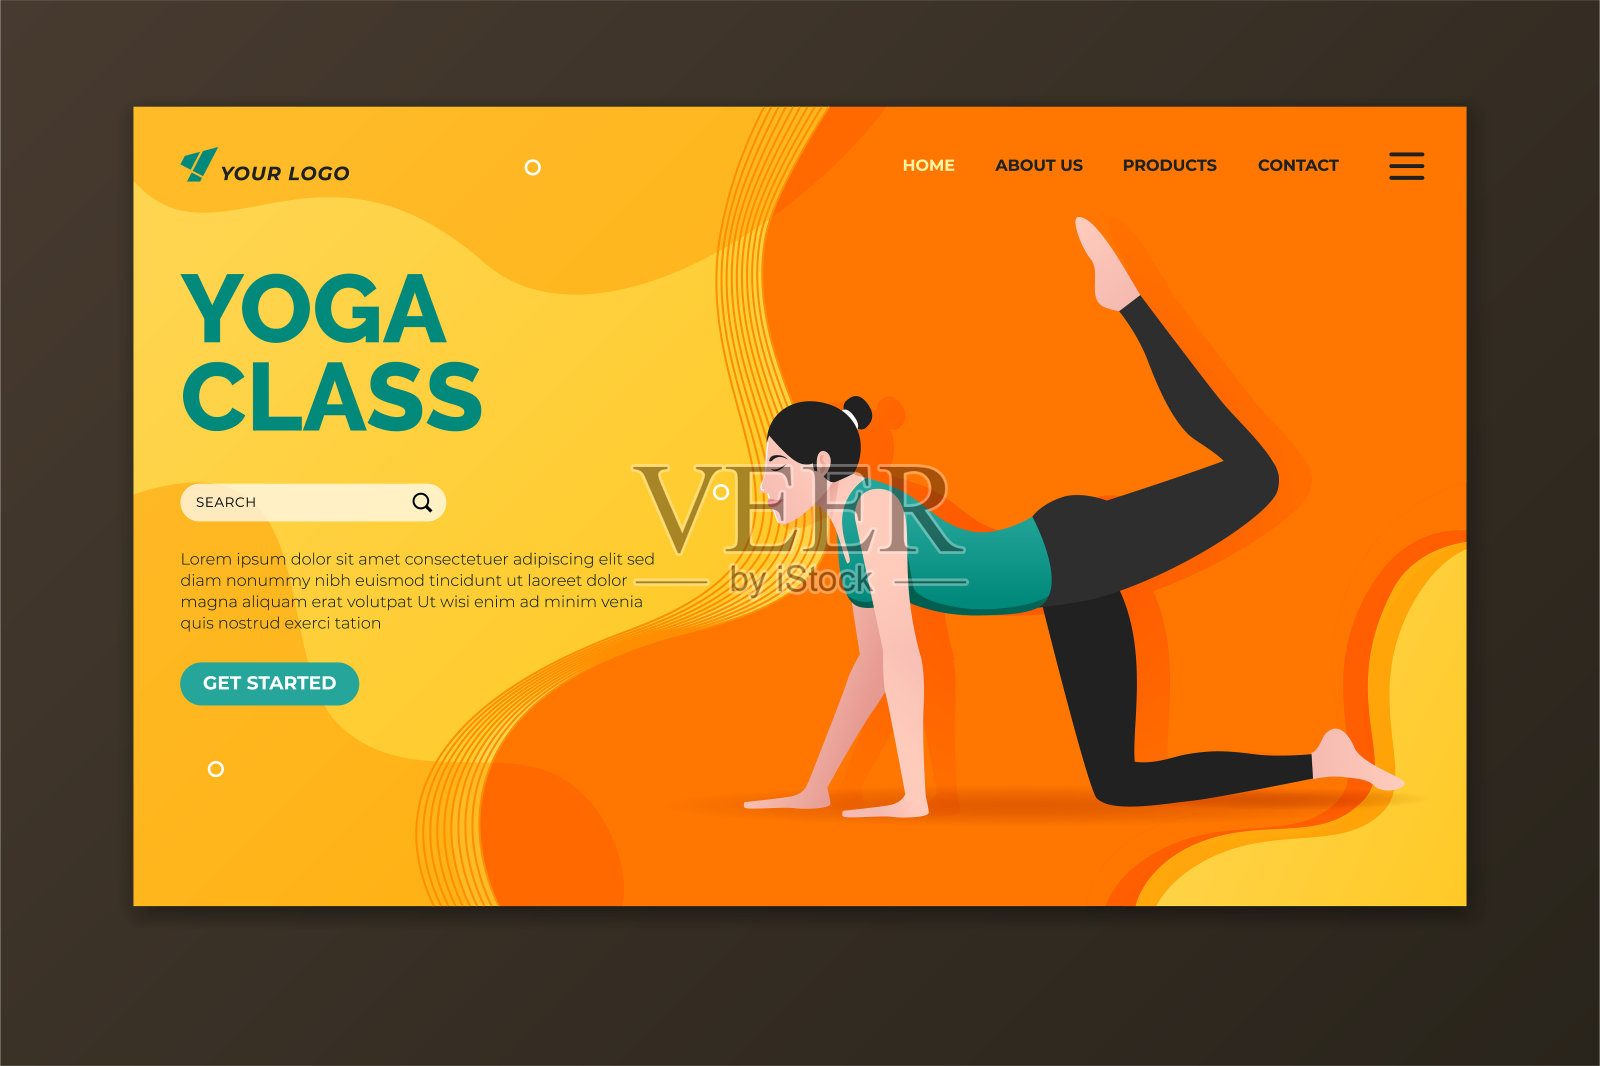 瑜伽课程登陆页面模板。做半弓姿势的女人。网页设计为网站和手机网站设计模板素材